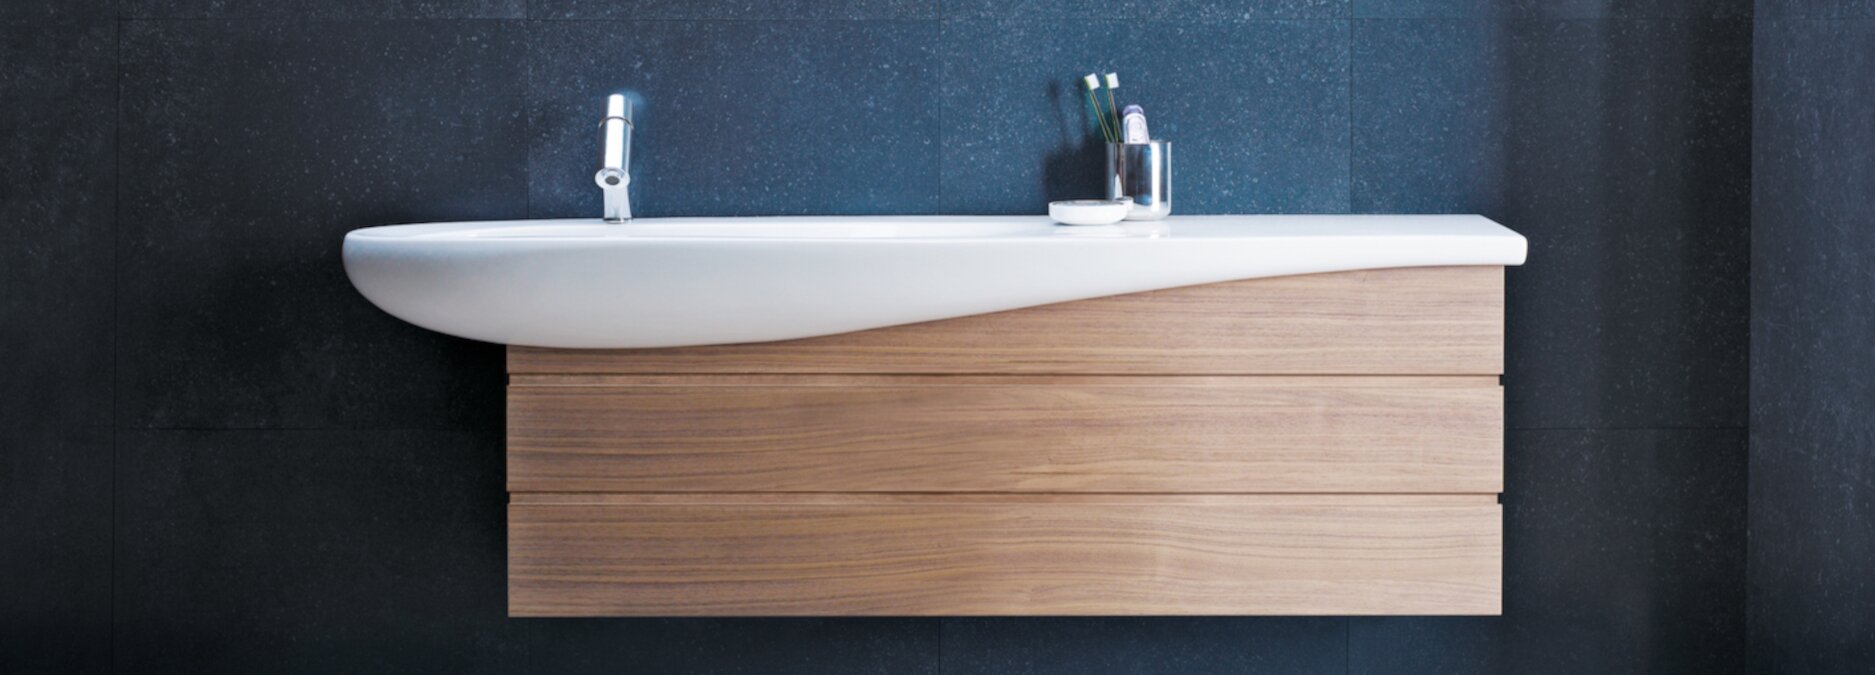 Waschbecken mit Unterschrank - ein Muss in jedem Badezimmer - Waschtisch mit Unterschrank | Blog ssd-armaturenshop.de